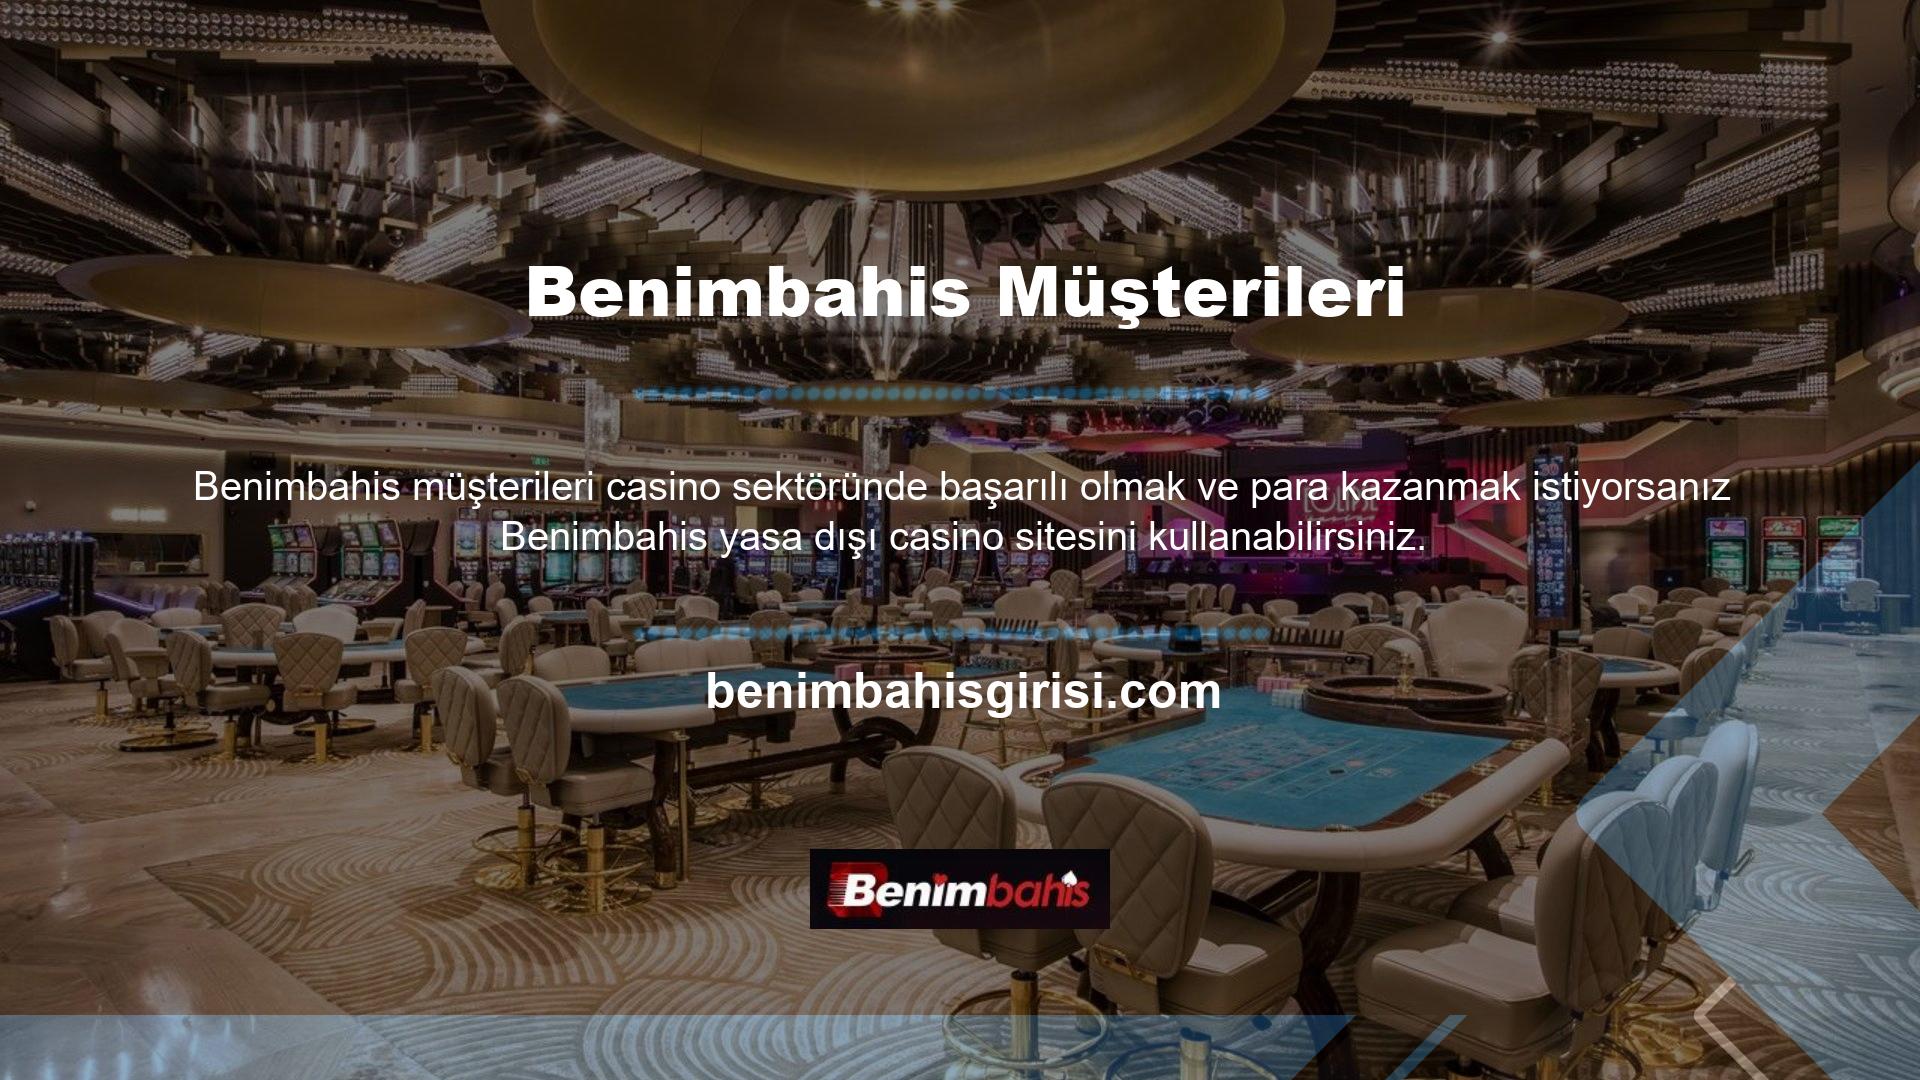 Benimbahis müşterilerini tanıtıyor Ayrıca Benimbahis bahis sitesi, oyunculara slot ve blackjack oyunları gibi oyunların keyfini çıkarabilecekleri çeşitli casino oyun seçenekleri sunuyor